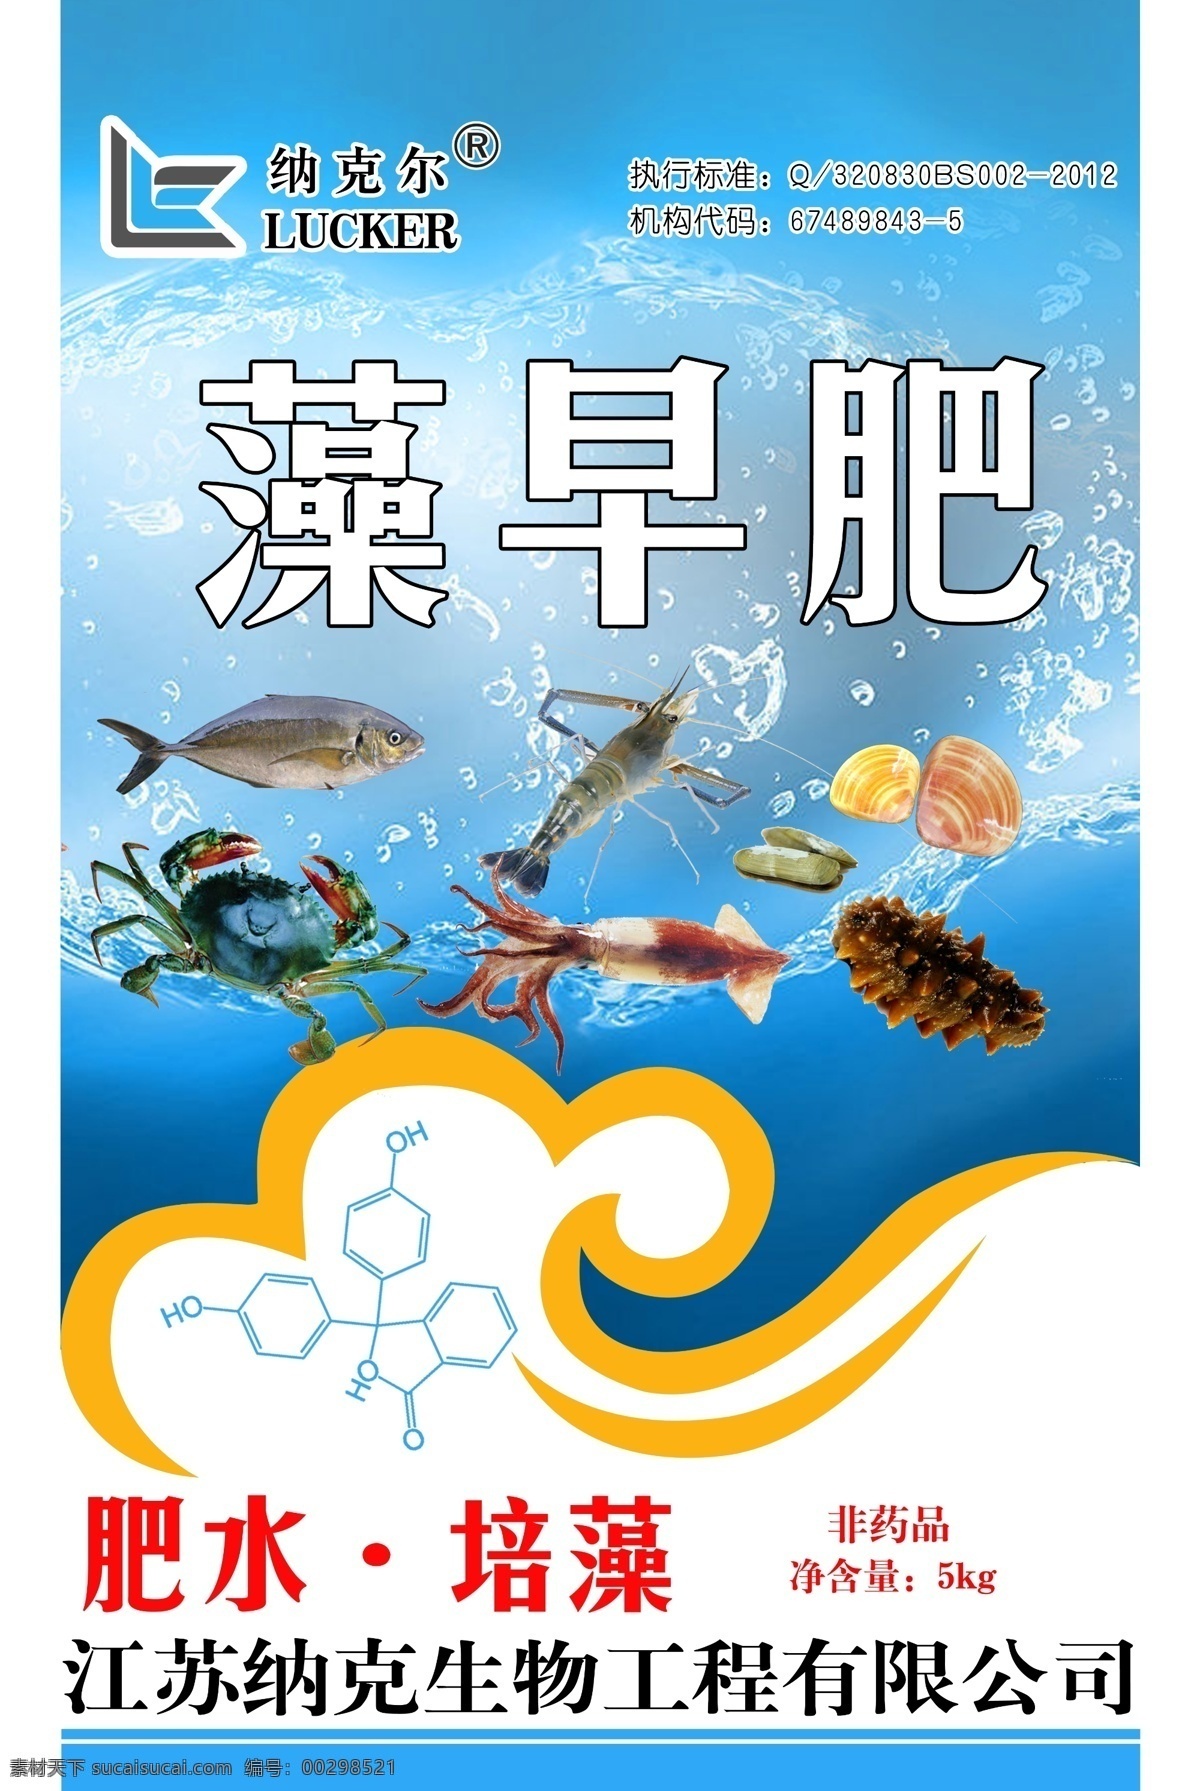 藻类 肥料 编织袋 活水 水藻 鱼虾养殖 塑料袋 肥水 培藻 包装设计 广告设计模板 源文件